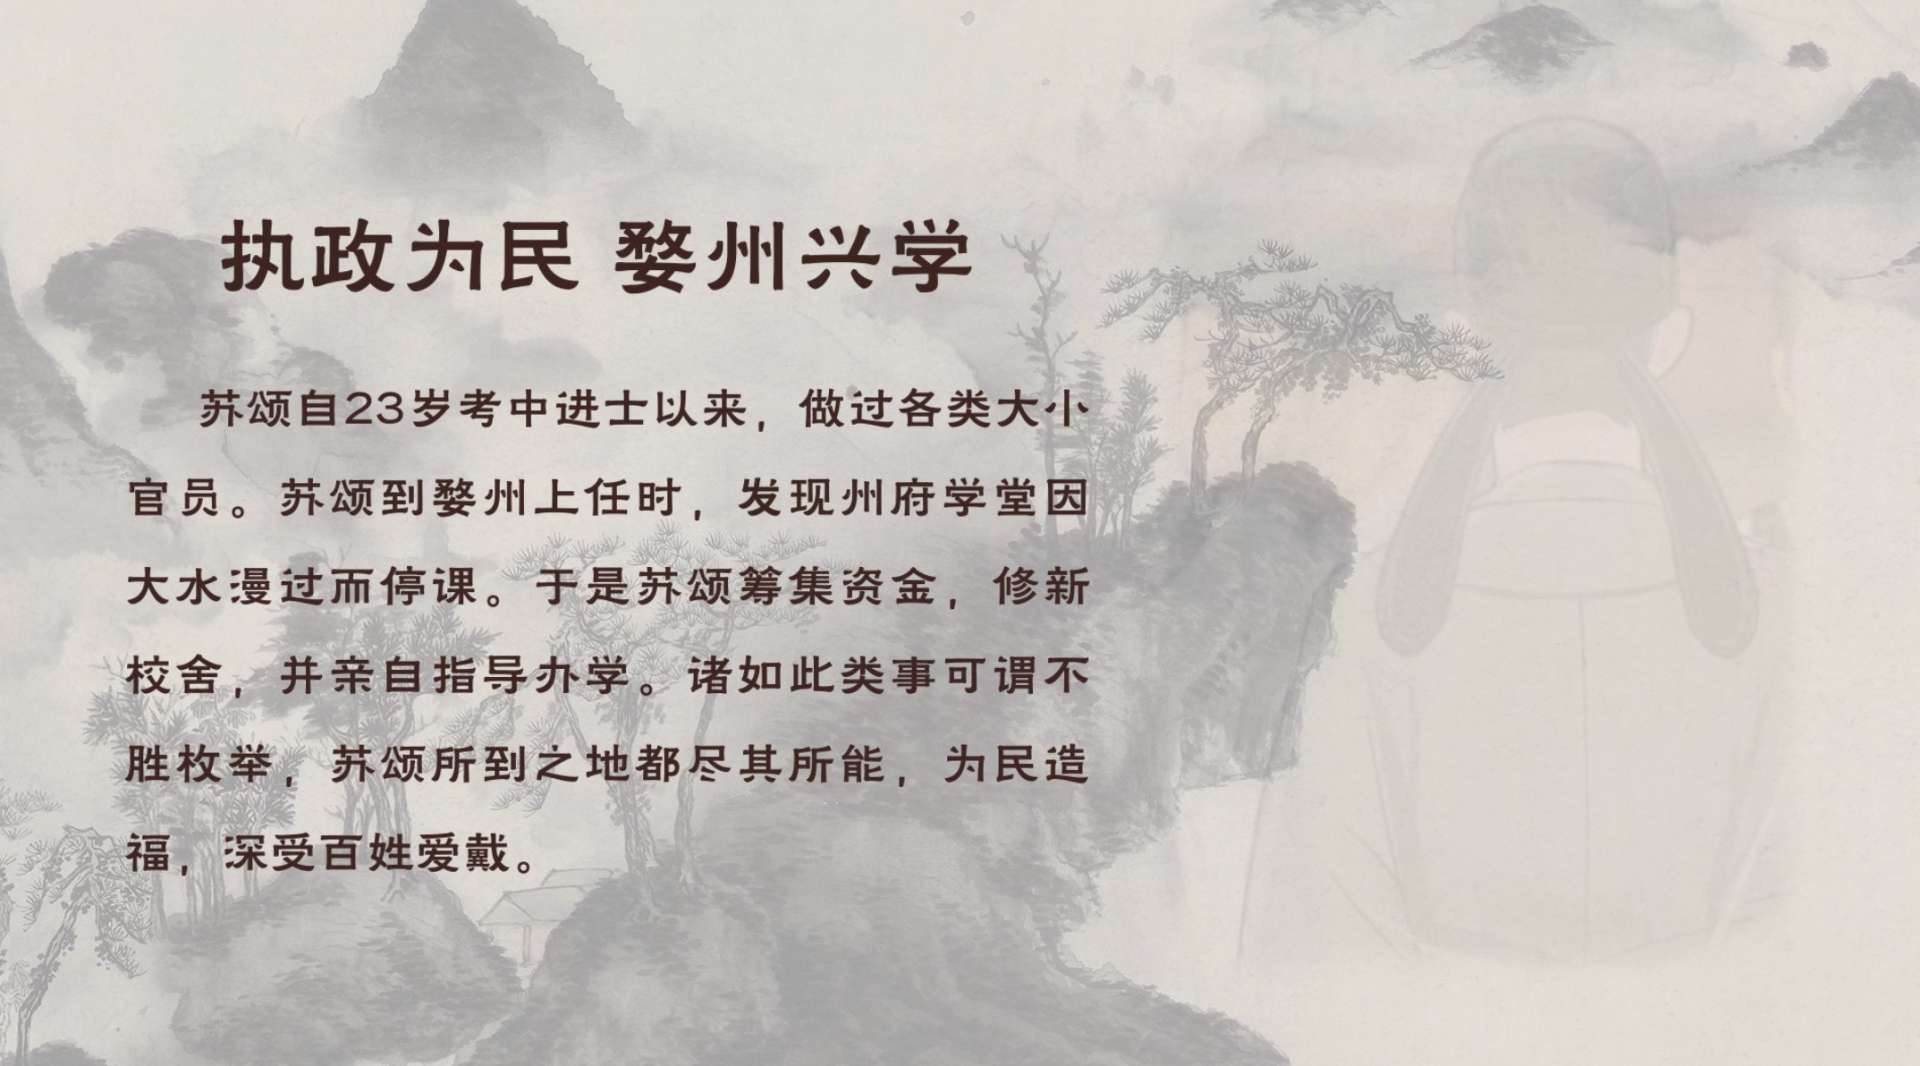 寻找千年的苏颂古装--执政为民 婺州兴学  古装手绘写实